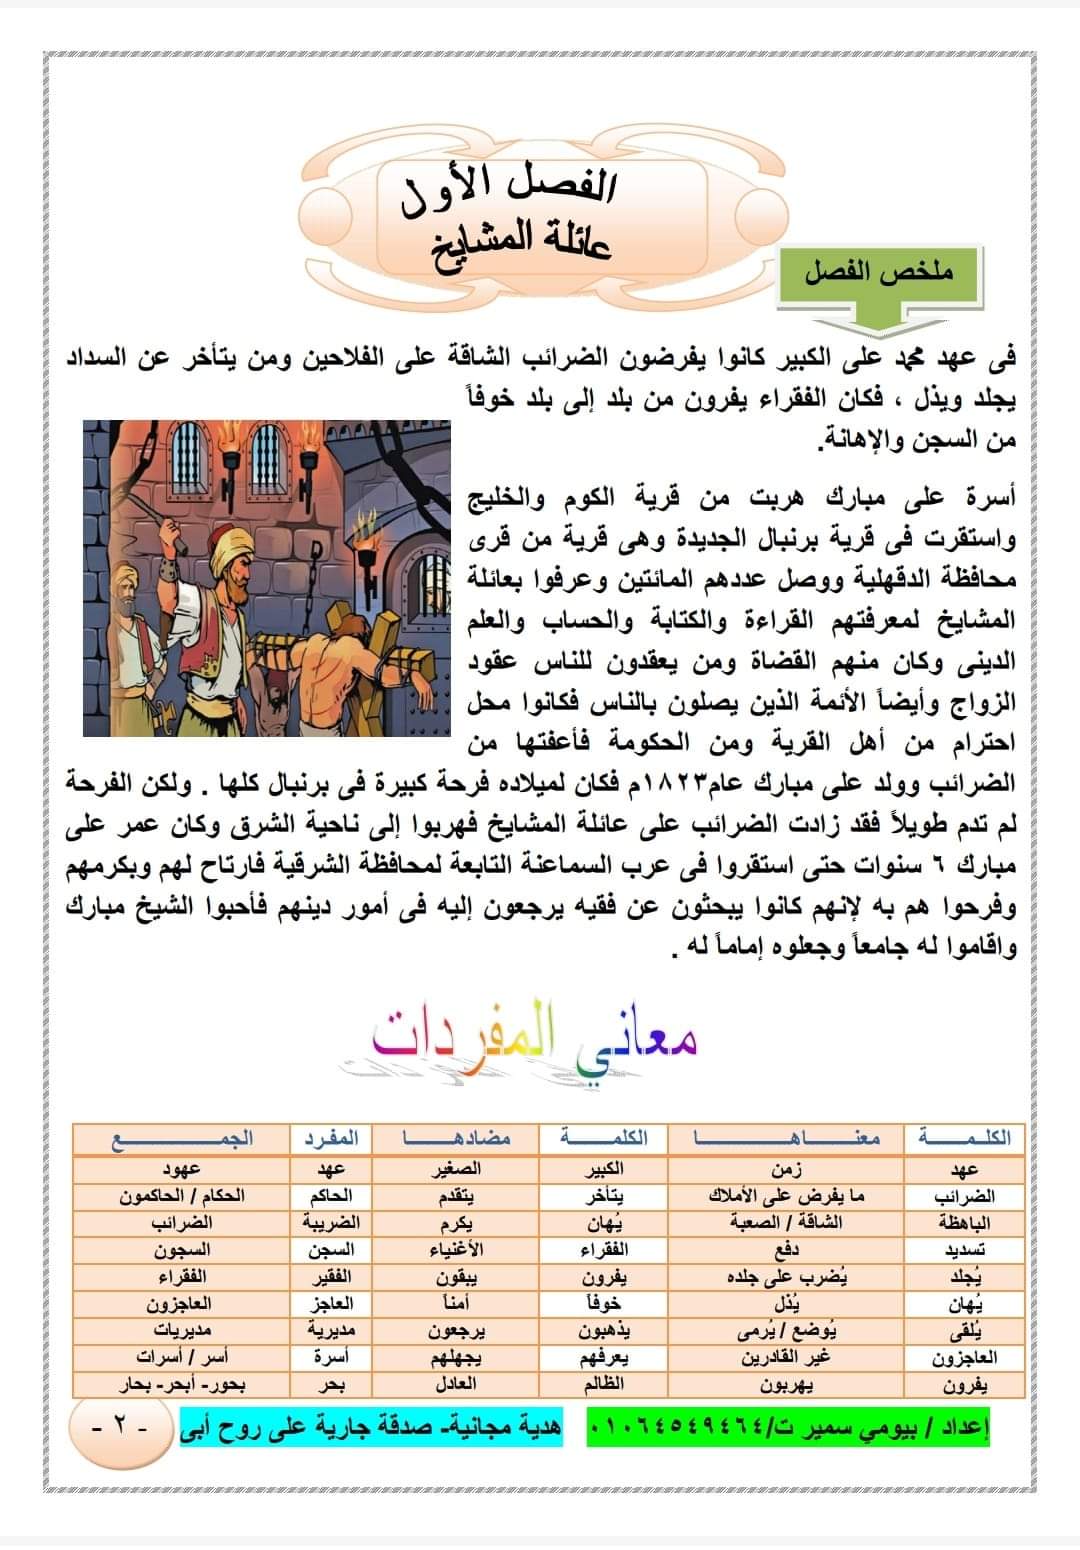 مذكرة مراجعة علي مبارك للصف السادس الابتدائي - علي مبارك